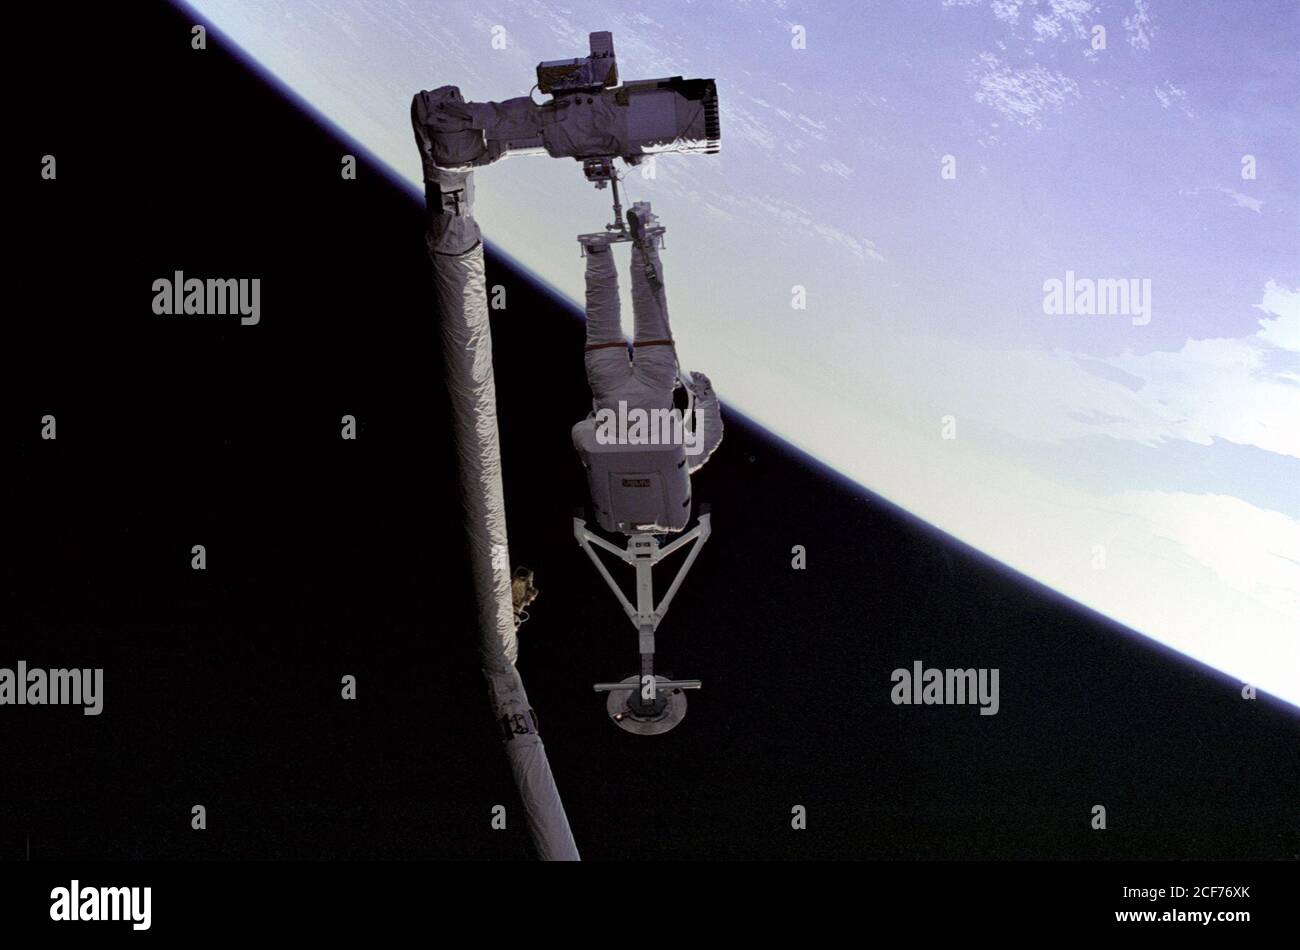 Pierre Thuot, specialista della missione STS-49, è appollaiato sull'effettore finale del braccio del robot (Remote Manipulator System/RMS), con la barra di cattura Intelsat VI. Questo sarebbe uno dei molti tentativi di "aggrappare" il satellite Intelsat VI che è stato reso inoperativo quando il motore del modulo Payload Assist (PAM) non è riuscito a sparare, impedendo così che raggiungesse un'altitudine operativa. Foto Stock